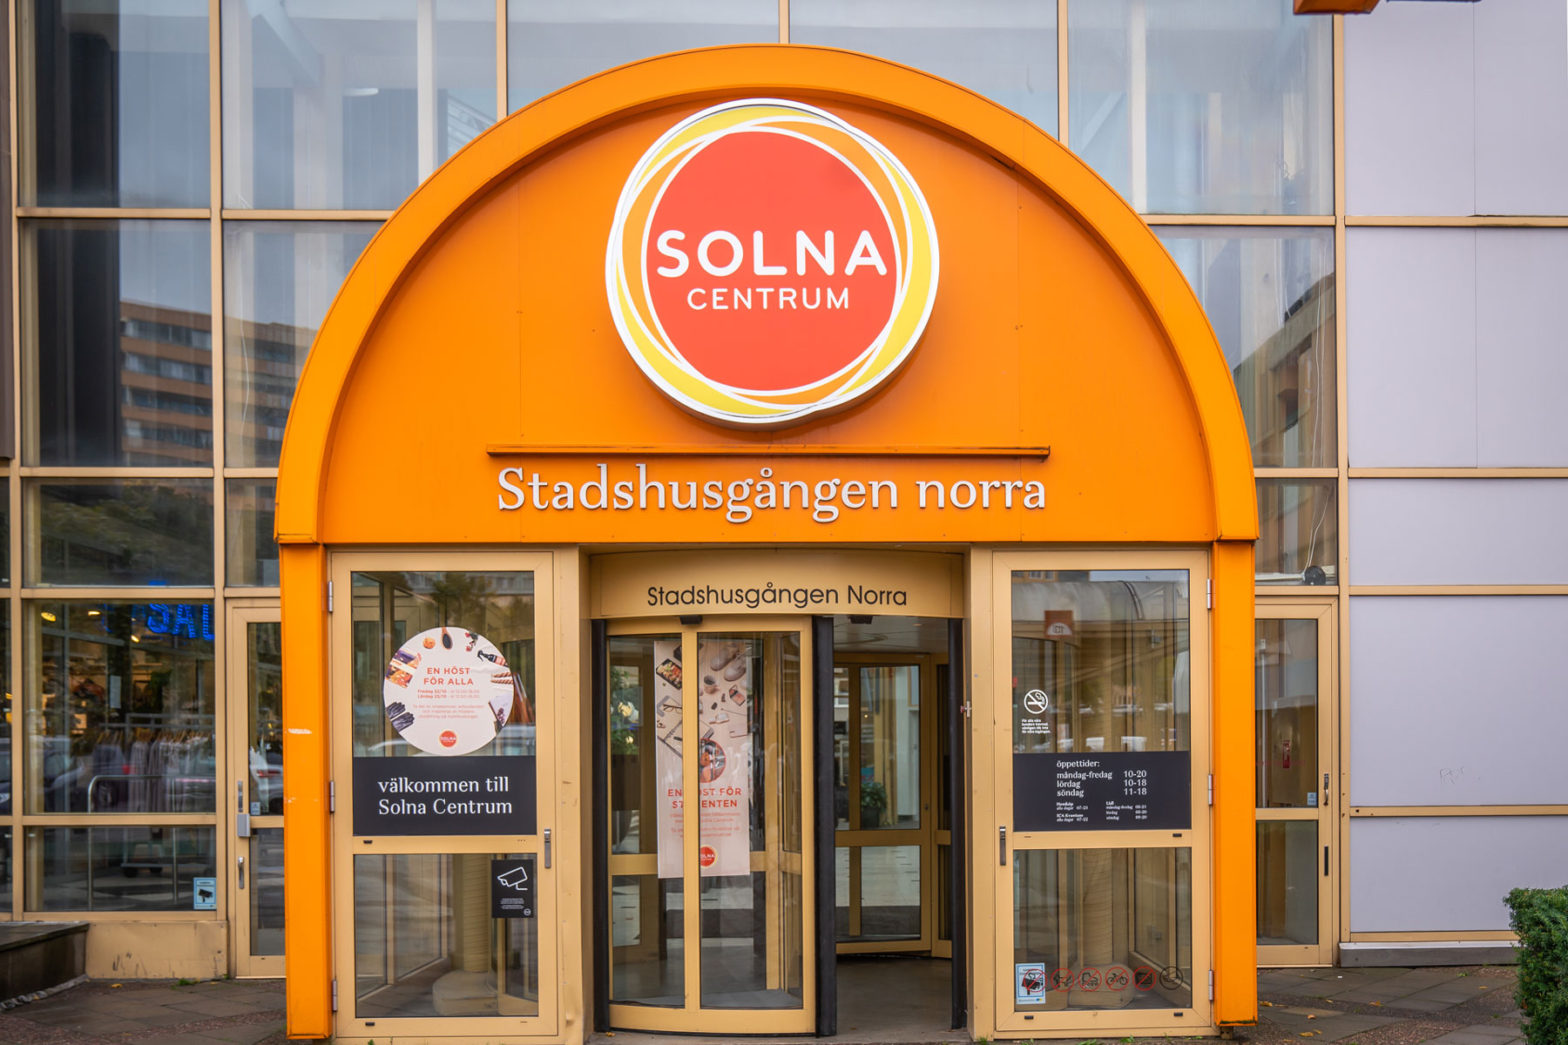 Säljer Solna centrum – ”ett strategiskt steg”